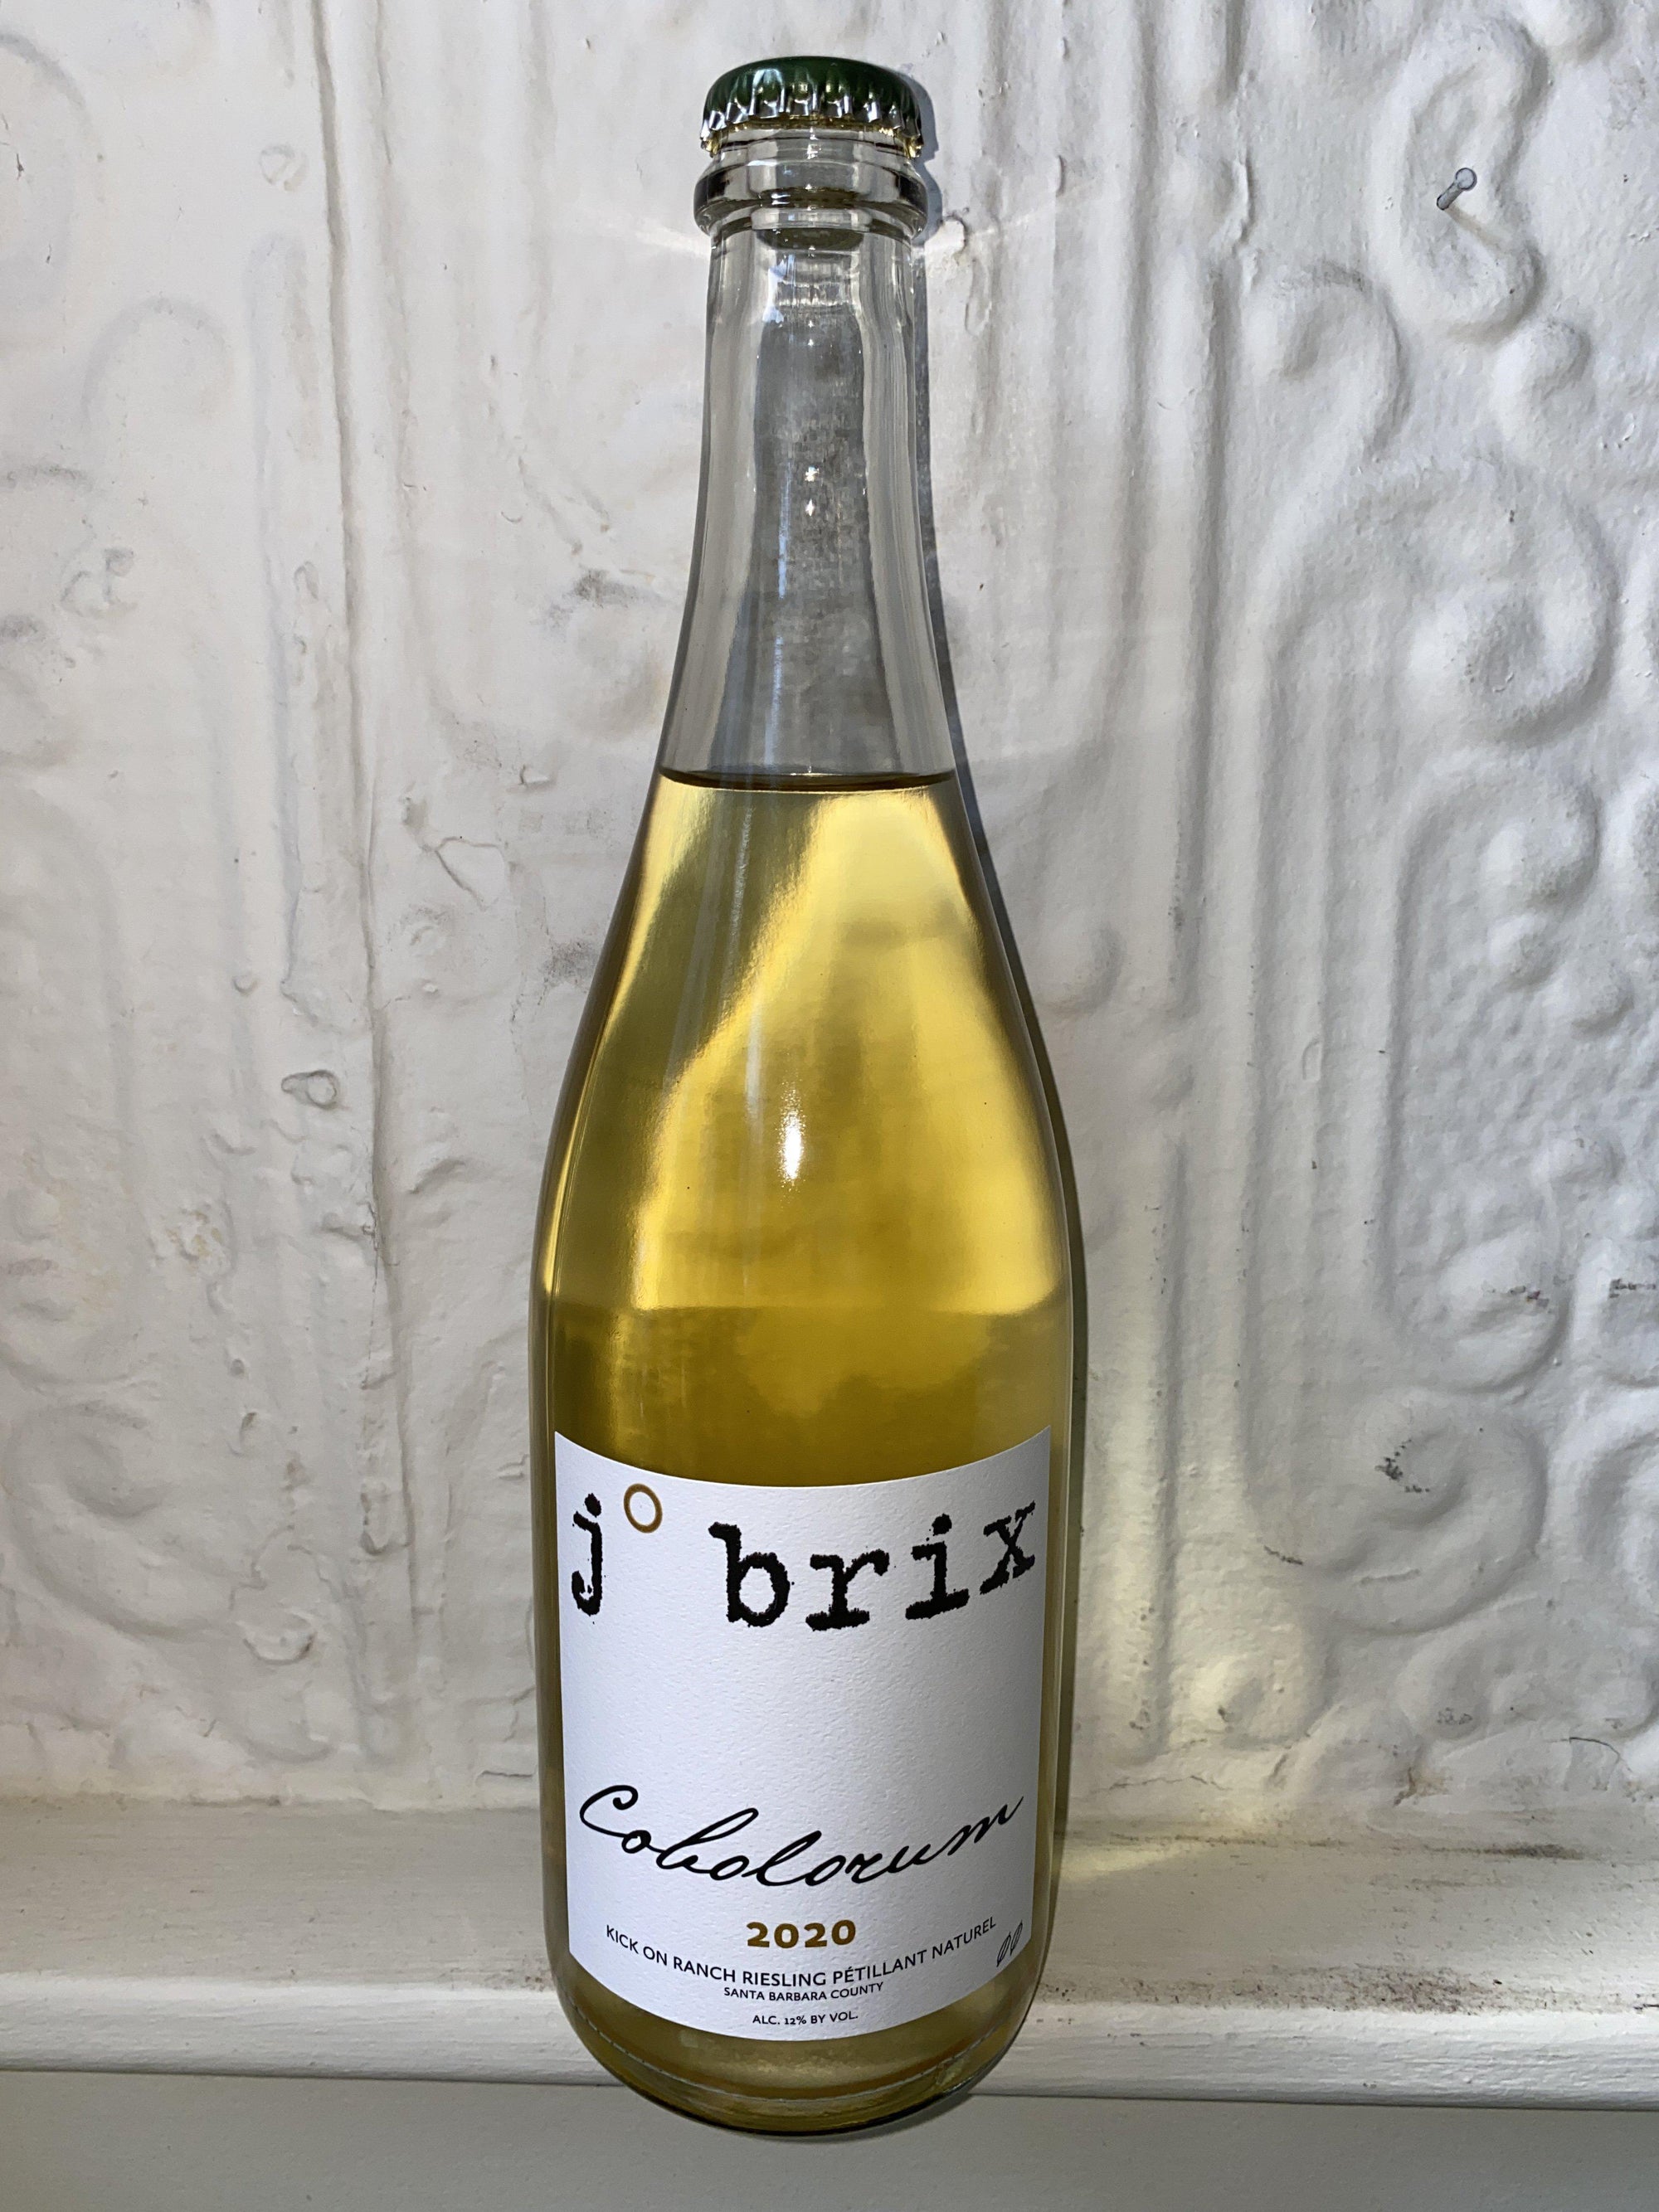 Cobolorum Riesling Pet Nat, J Brix 2020 (Santa Barbara County, California)-Wine-Bibber & Bell